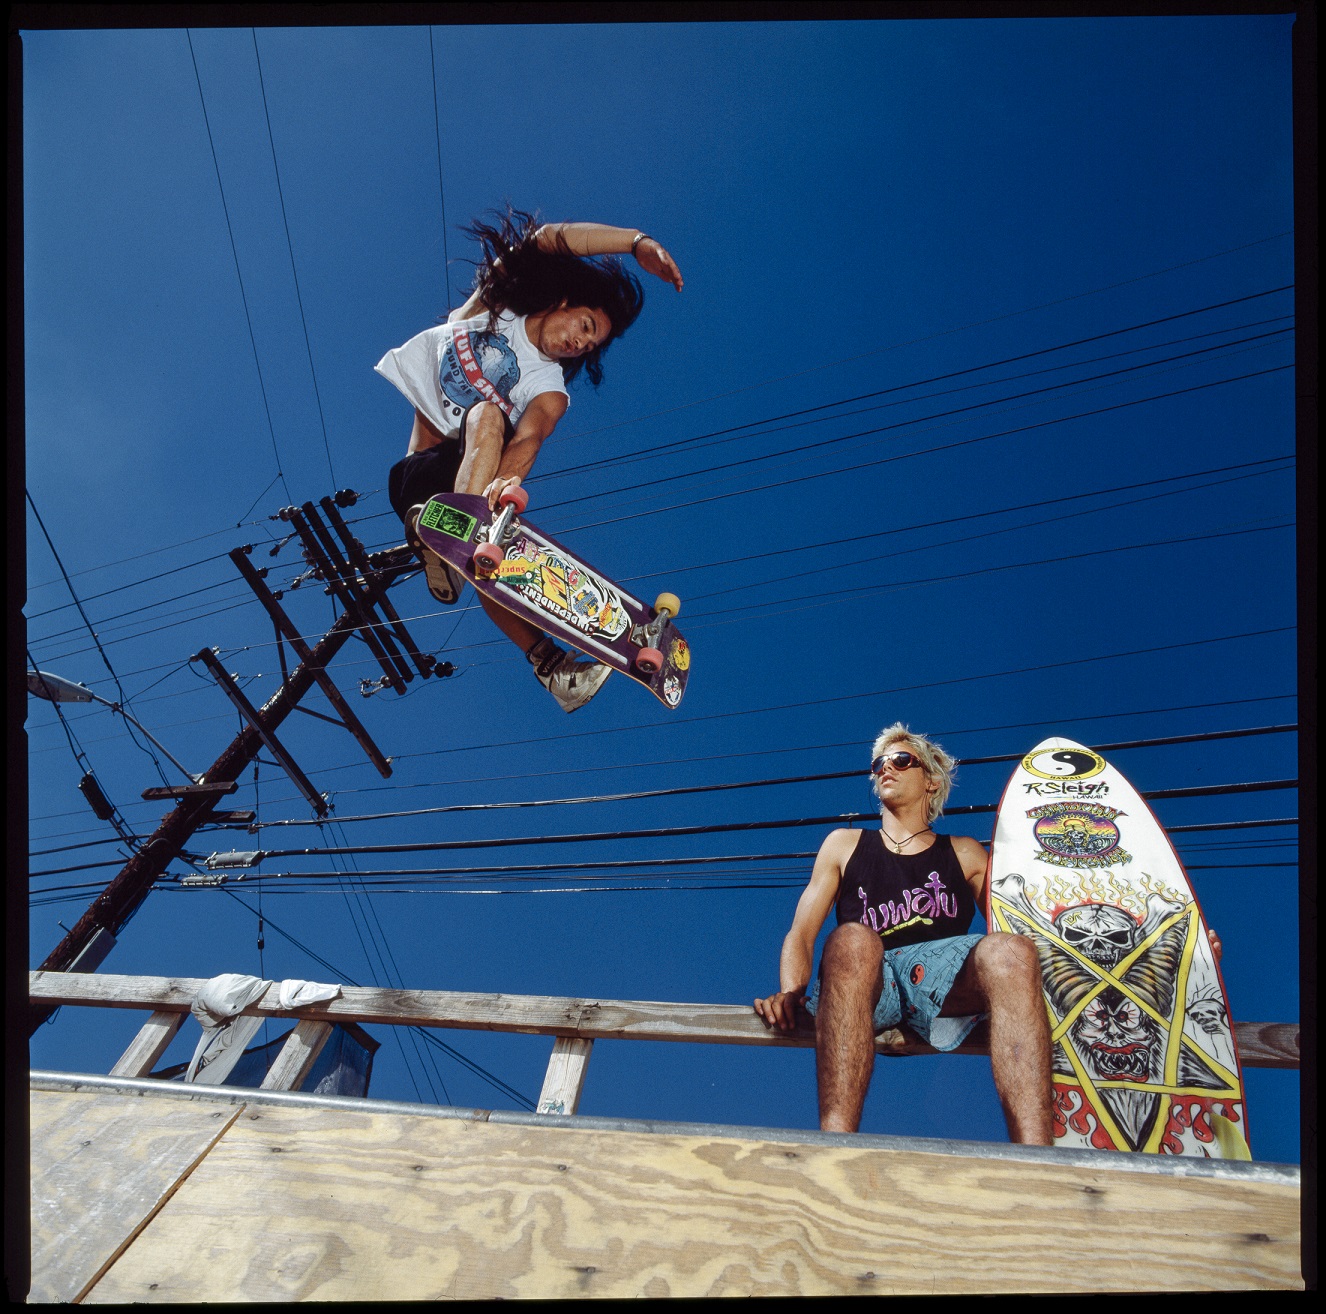 Interview: Art Brewer - Surf & Skateboard Photography Legend